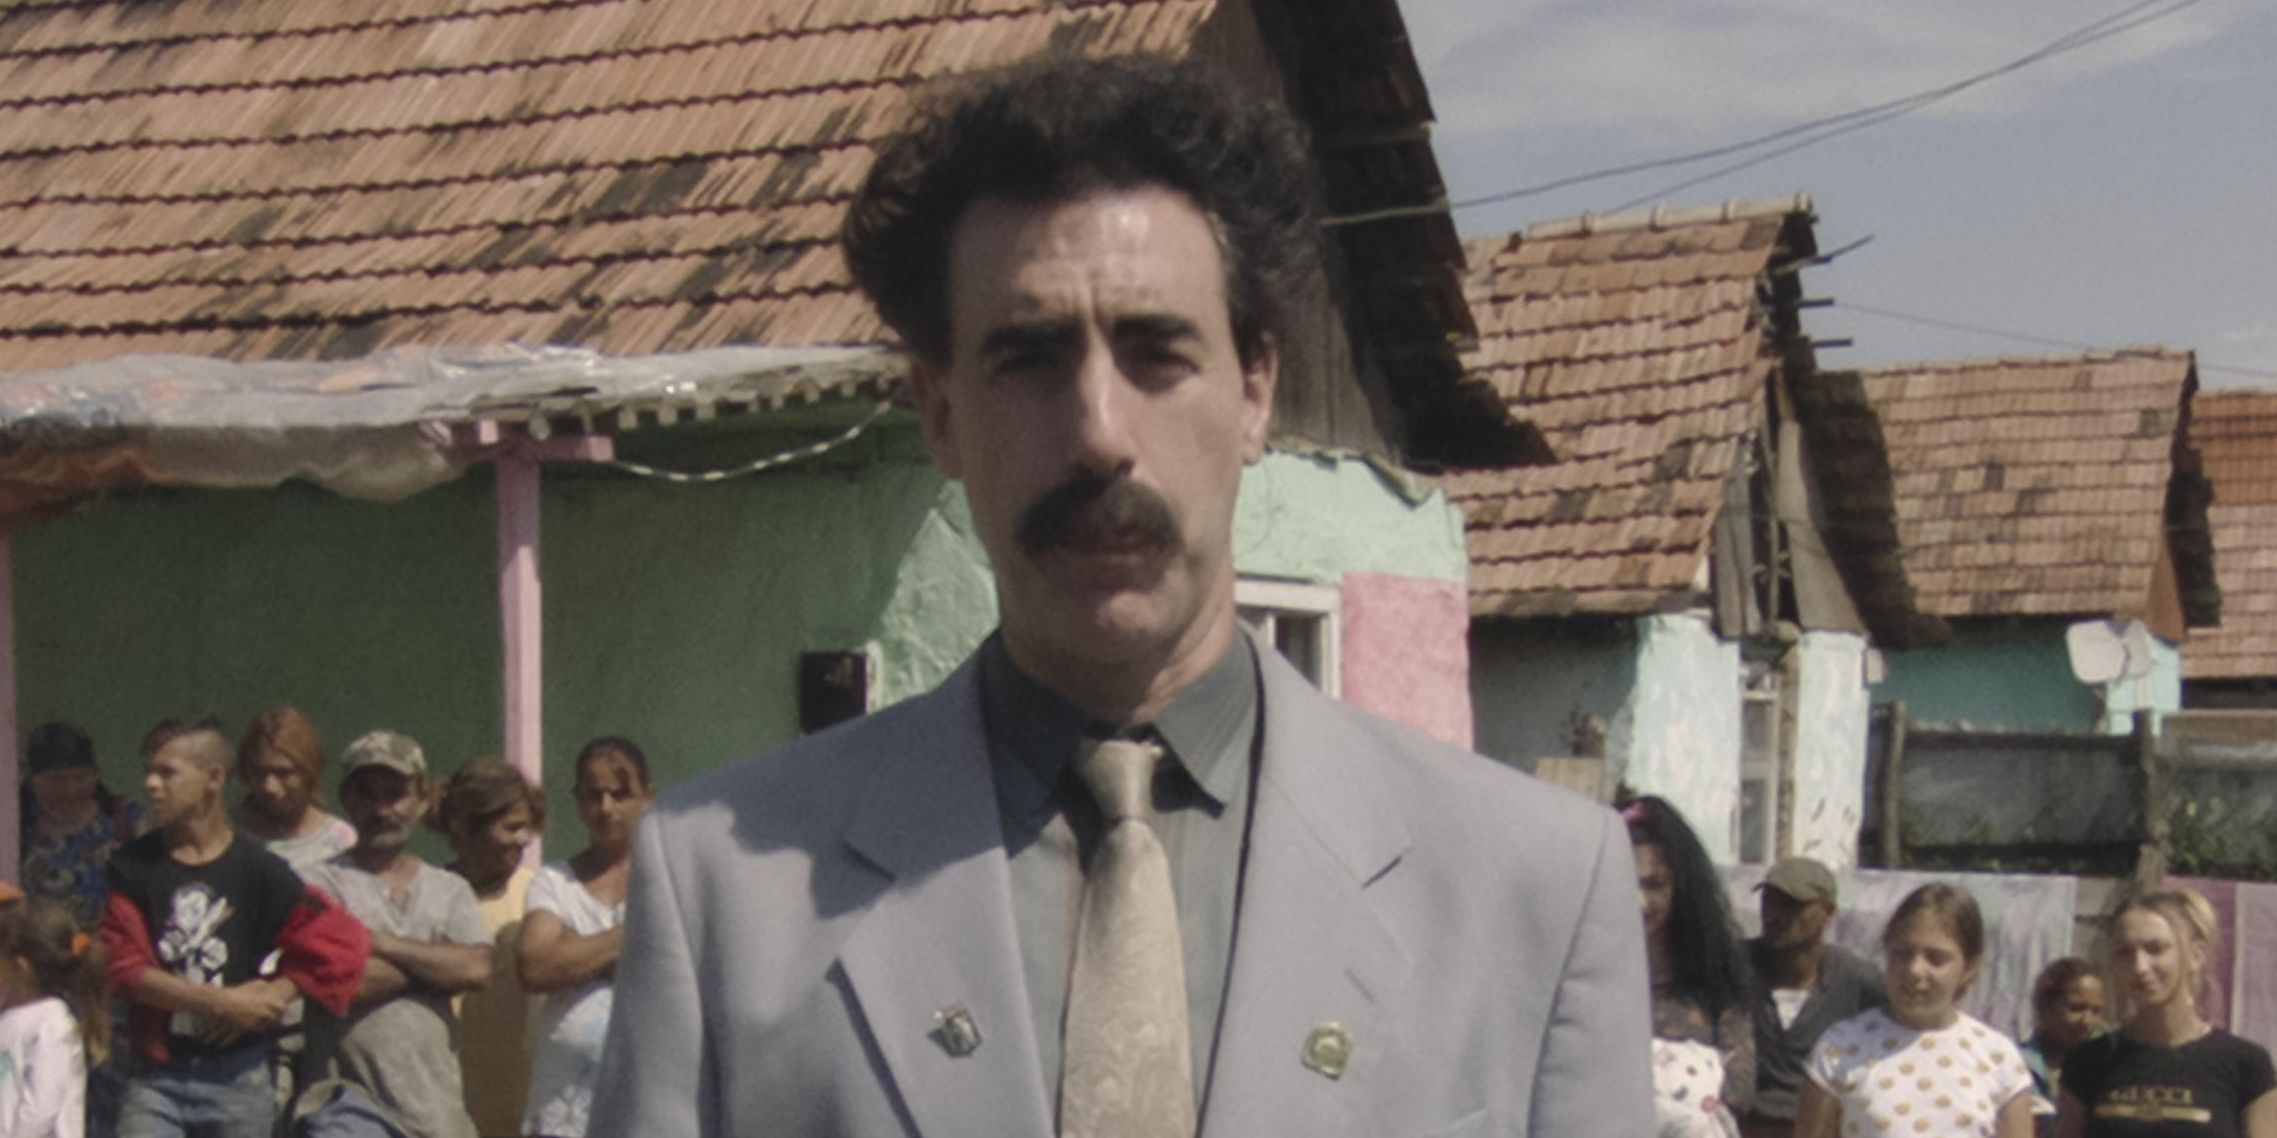 Borat in the village